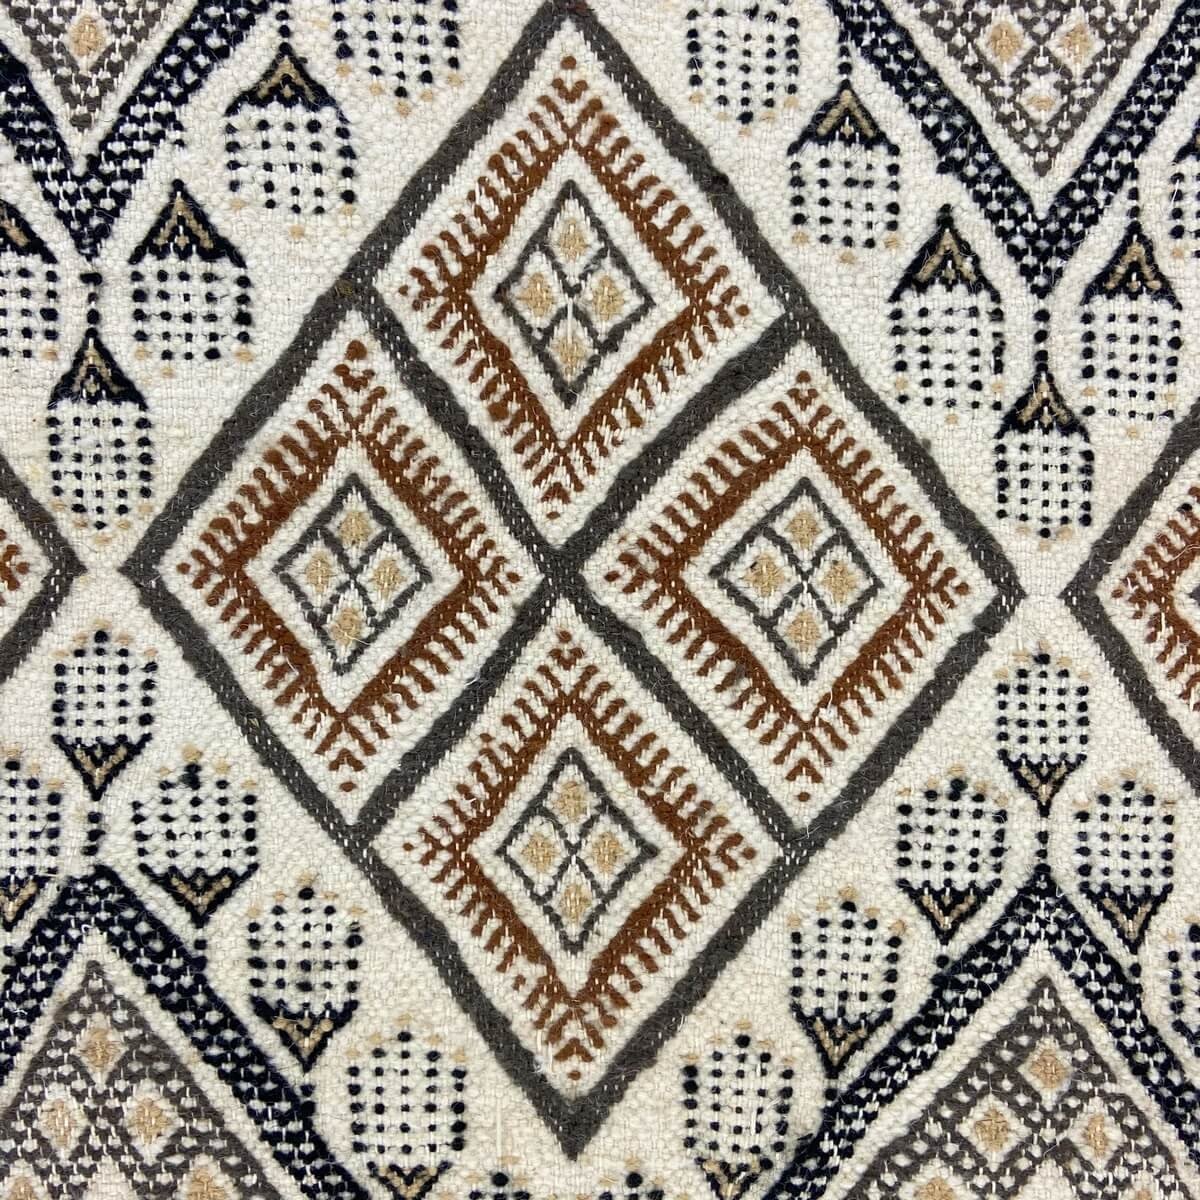 Berber tapijt Tapijt Margoum Damdakul 115x190 Wit/Beige (Handgeweven, Wol, Tunesië) Tunesisch Margoum Tapijt uit de stad Kairoua